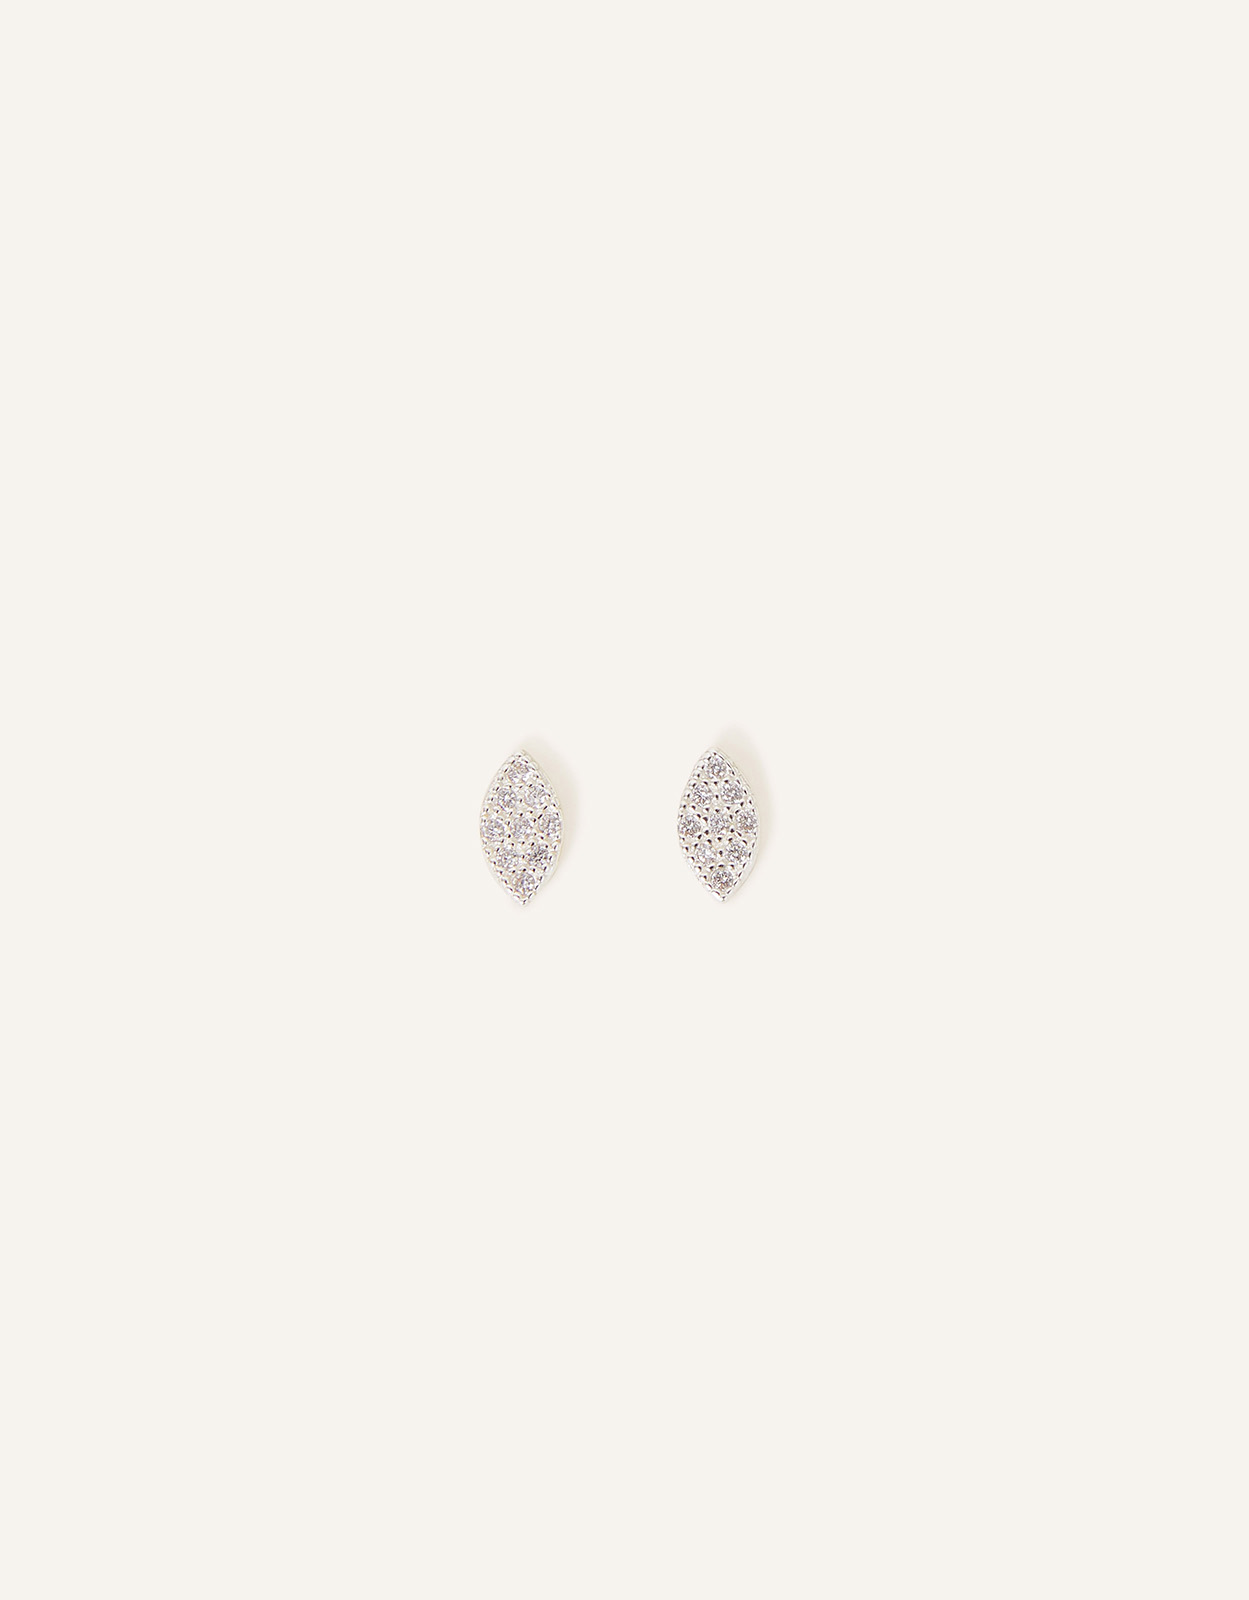 Accessorize Women's Sterling Silver Marquise Shape Earrings, Size: 0.1cm